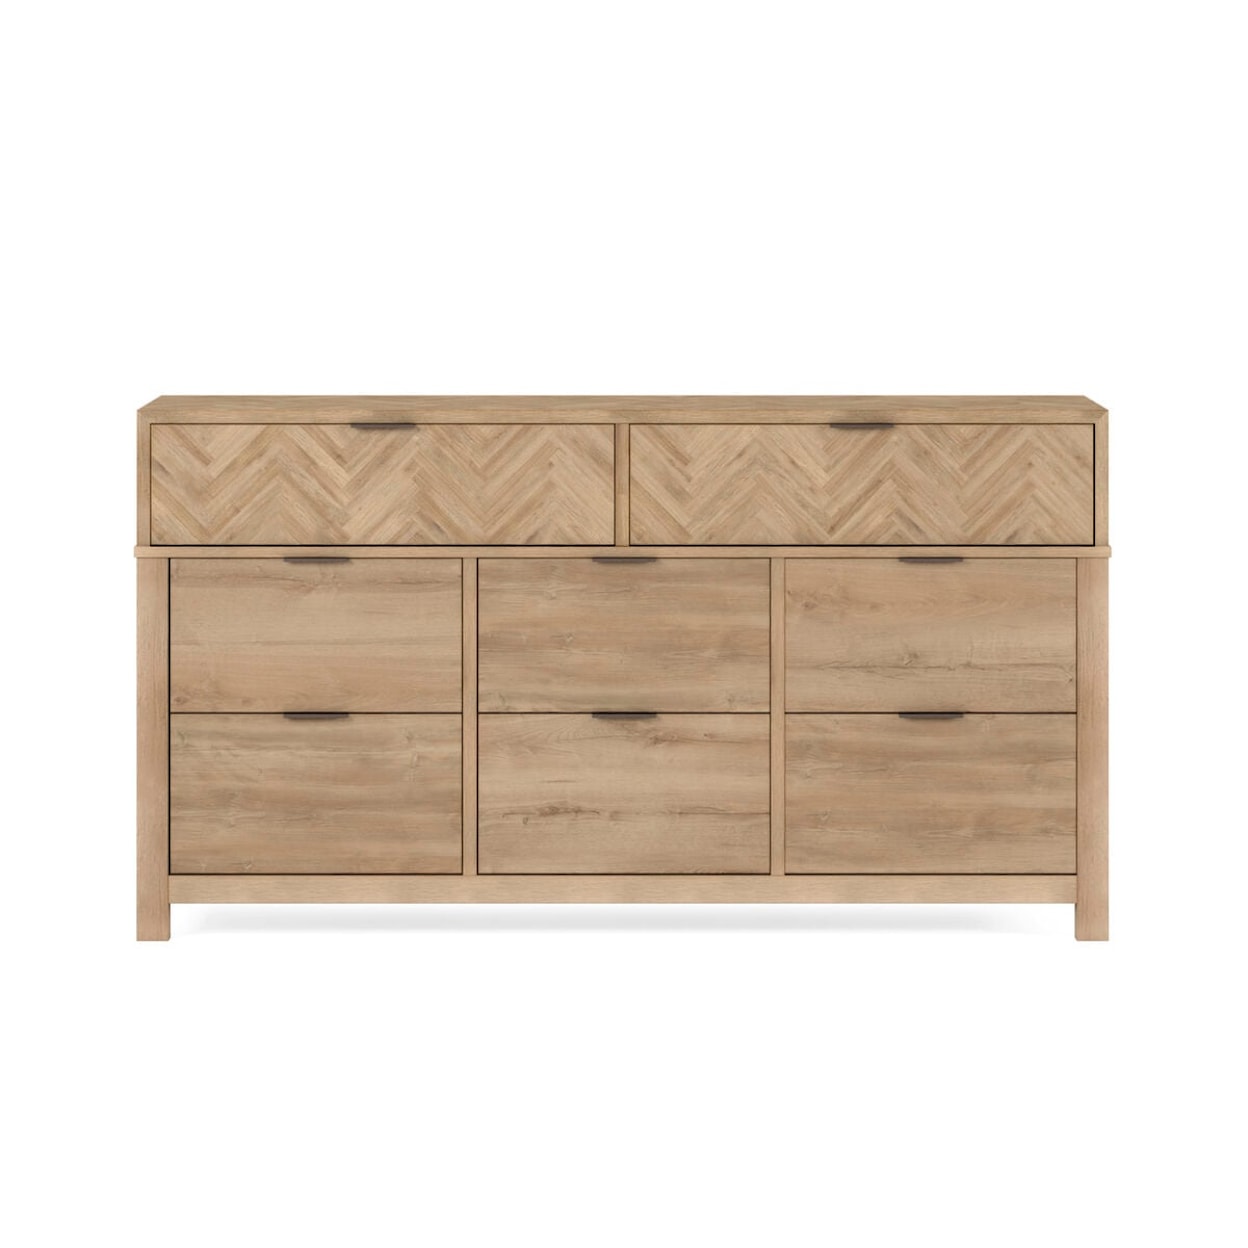 A.R.T. Furniture Inc 322 - Garrison Dresser